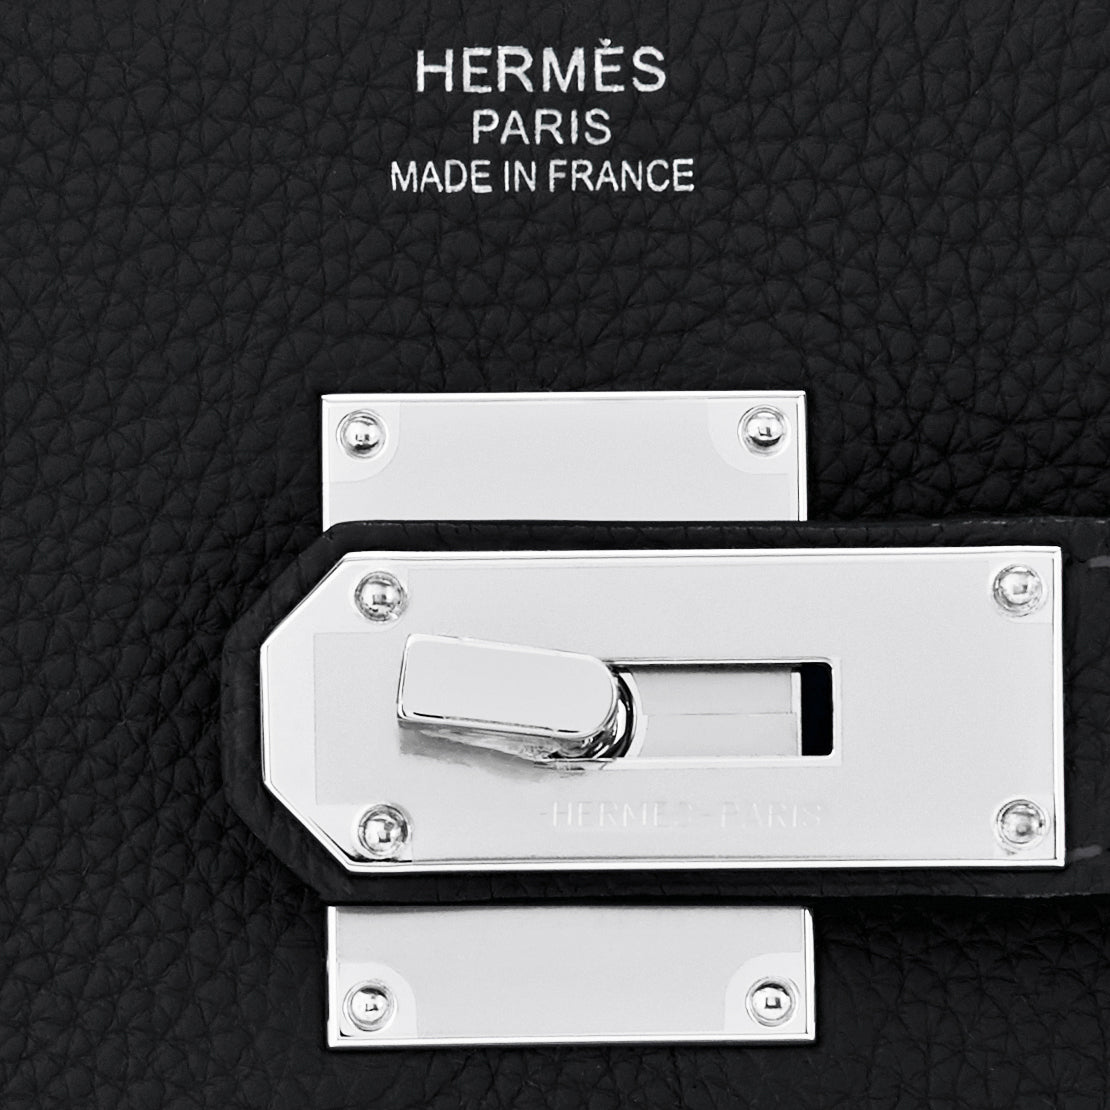 Hermes Hac Birkin Bag Noir Togo With Palladium Hardware 40 Auction